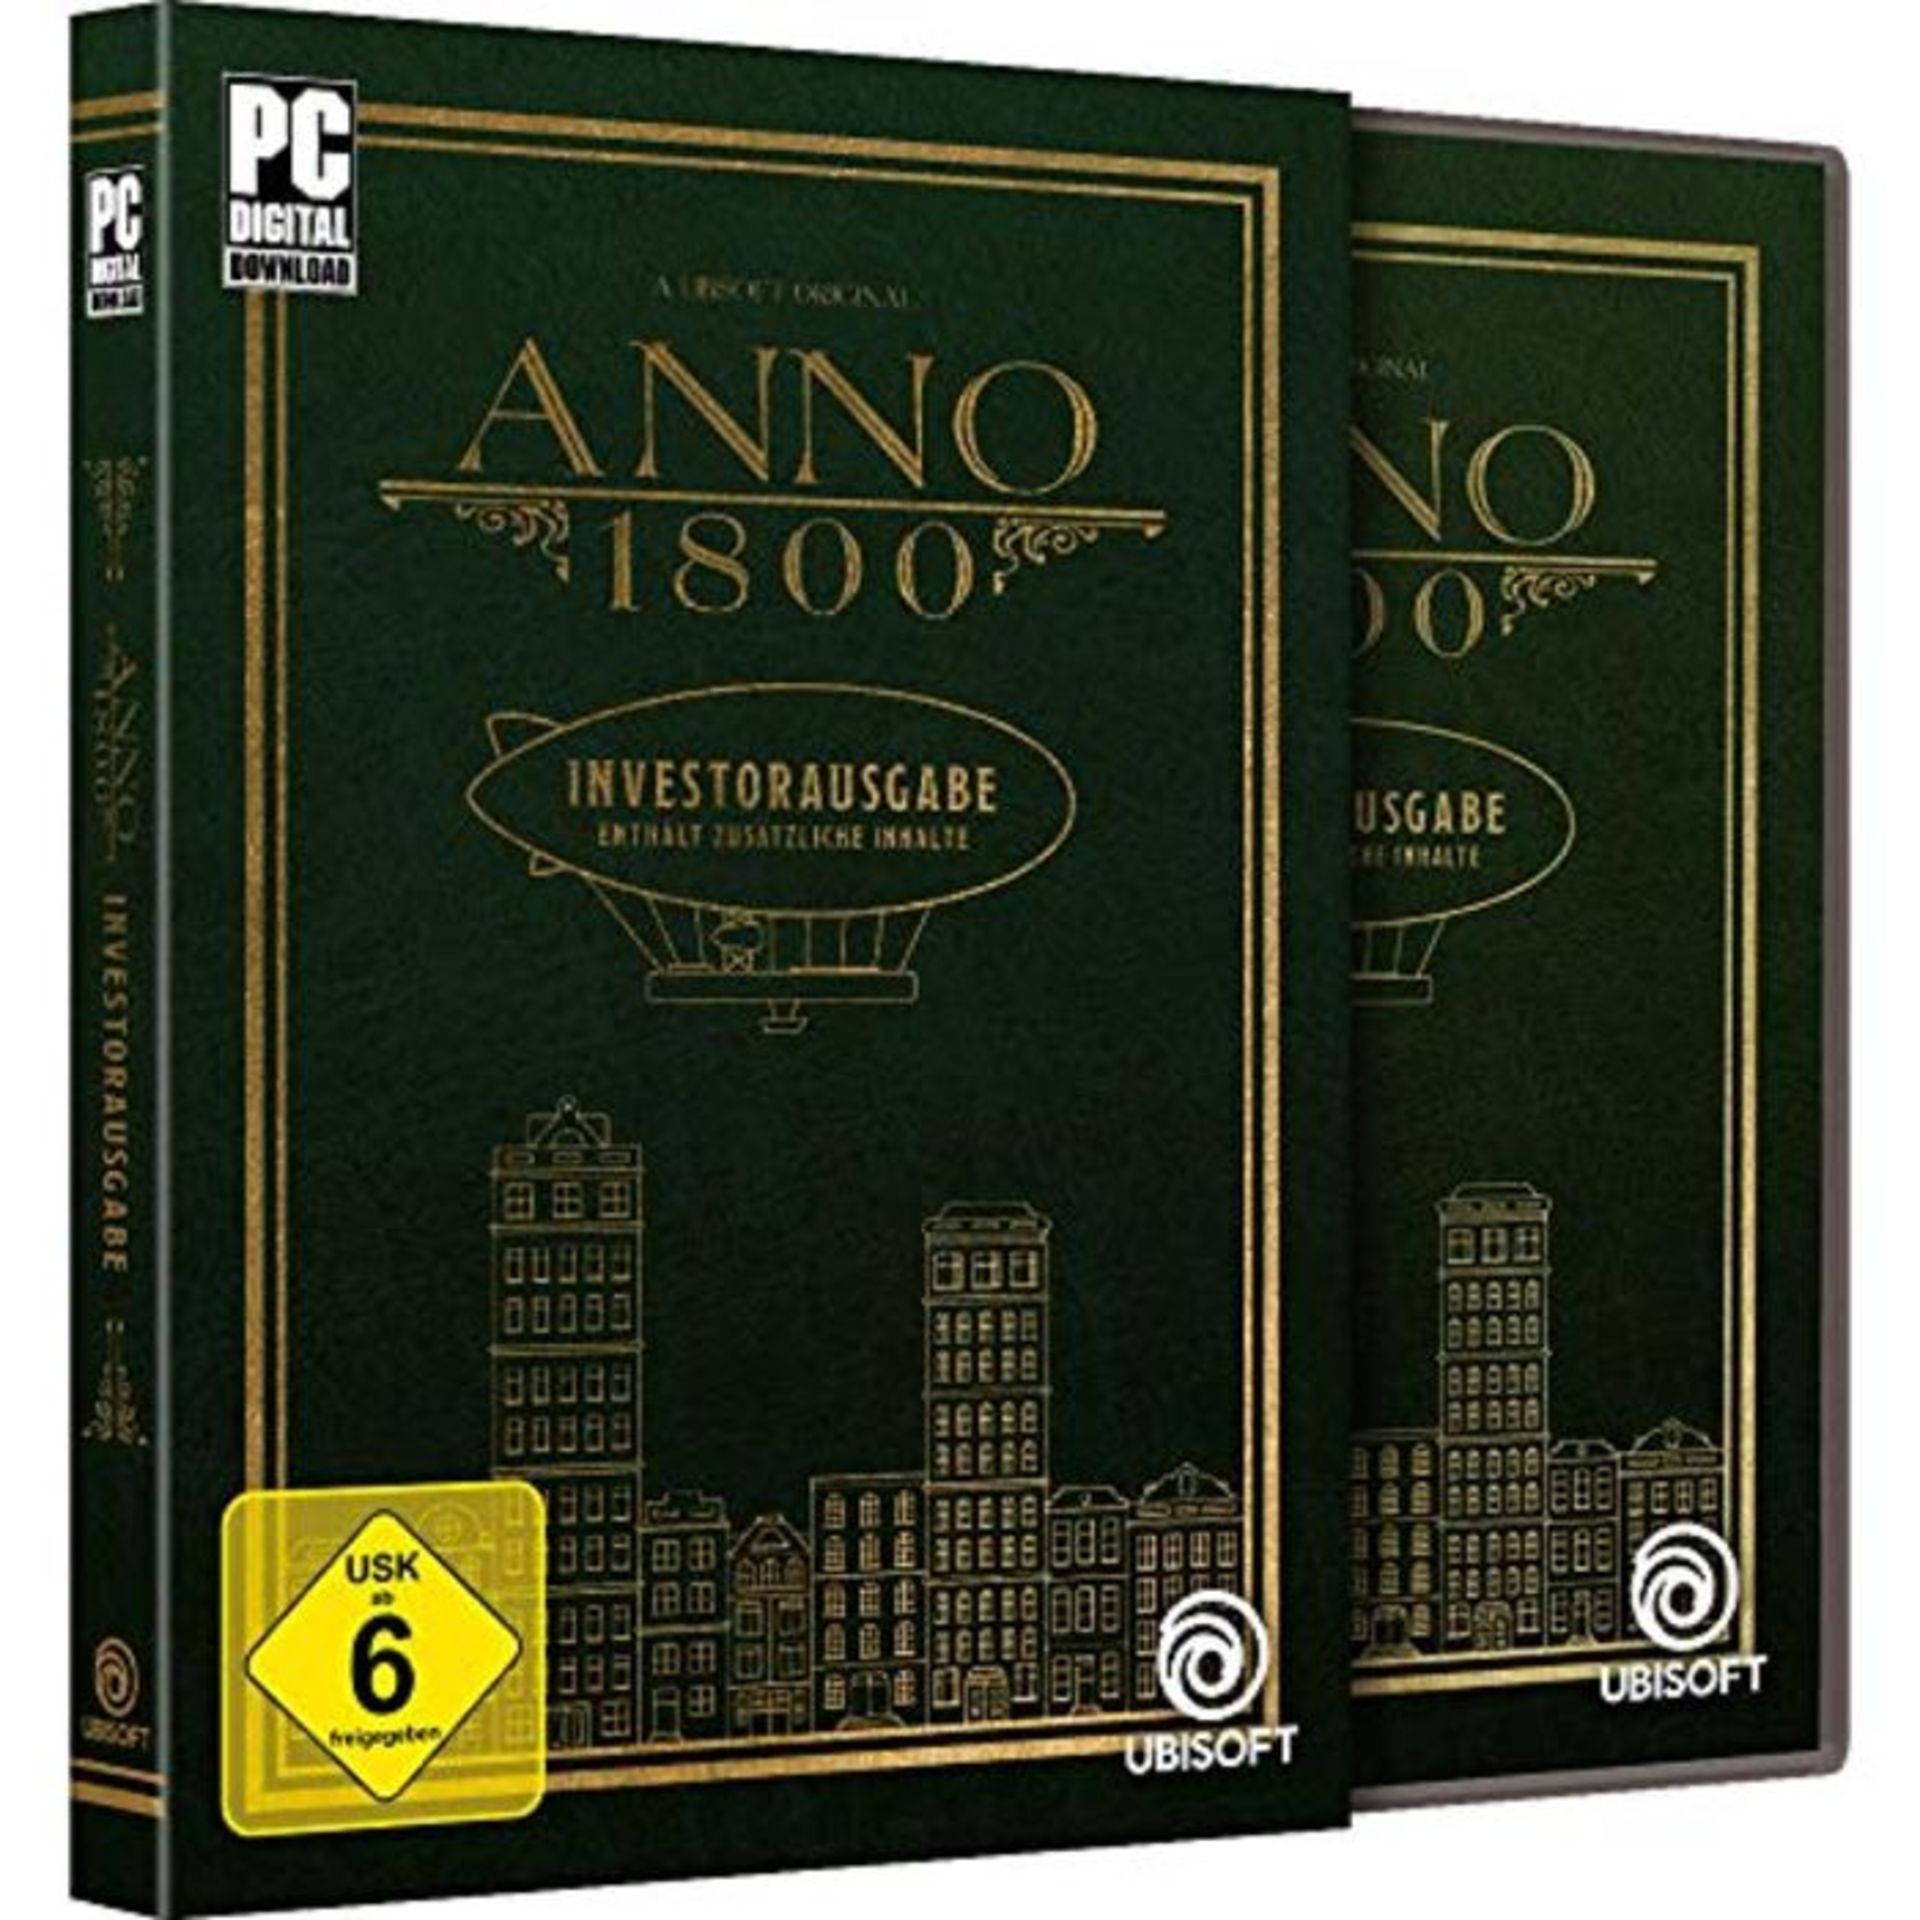 Anno 1800 PC Investorausgabe [German Version]